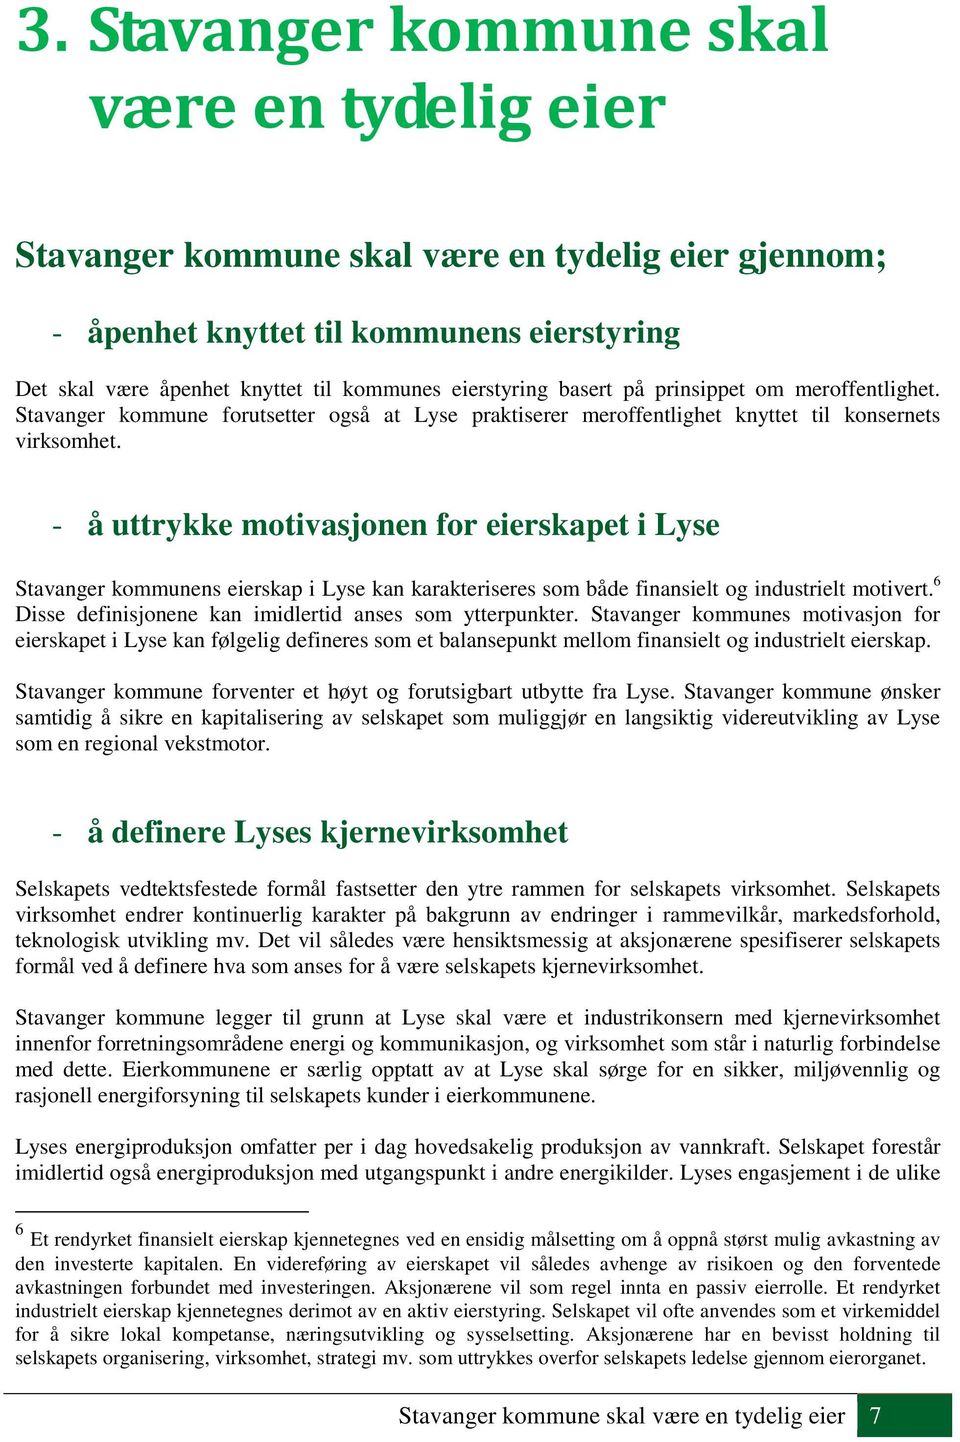 - å uttrykke motivasjonen for eierskapet i Lyse Stavanger kommunens eierskap i Lyse kan karakteriseres som både finansielt og industrielt motivert.